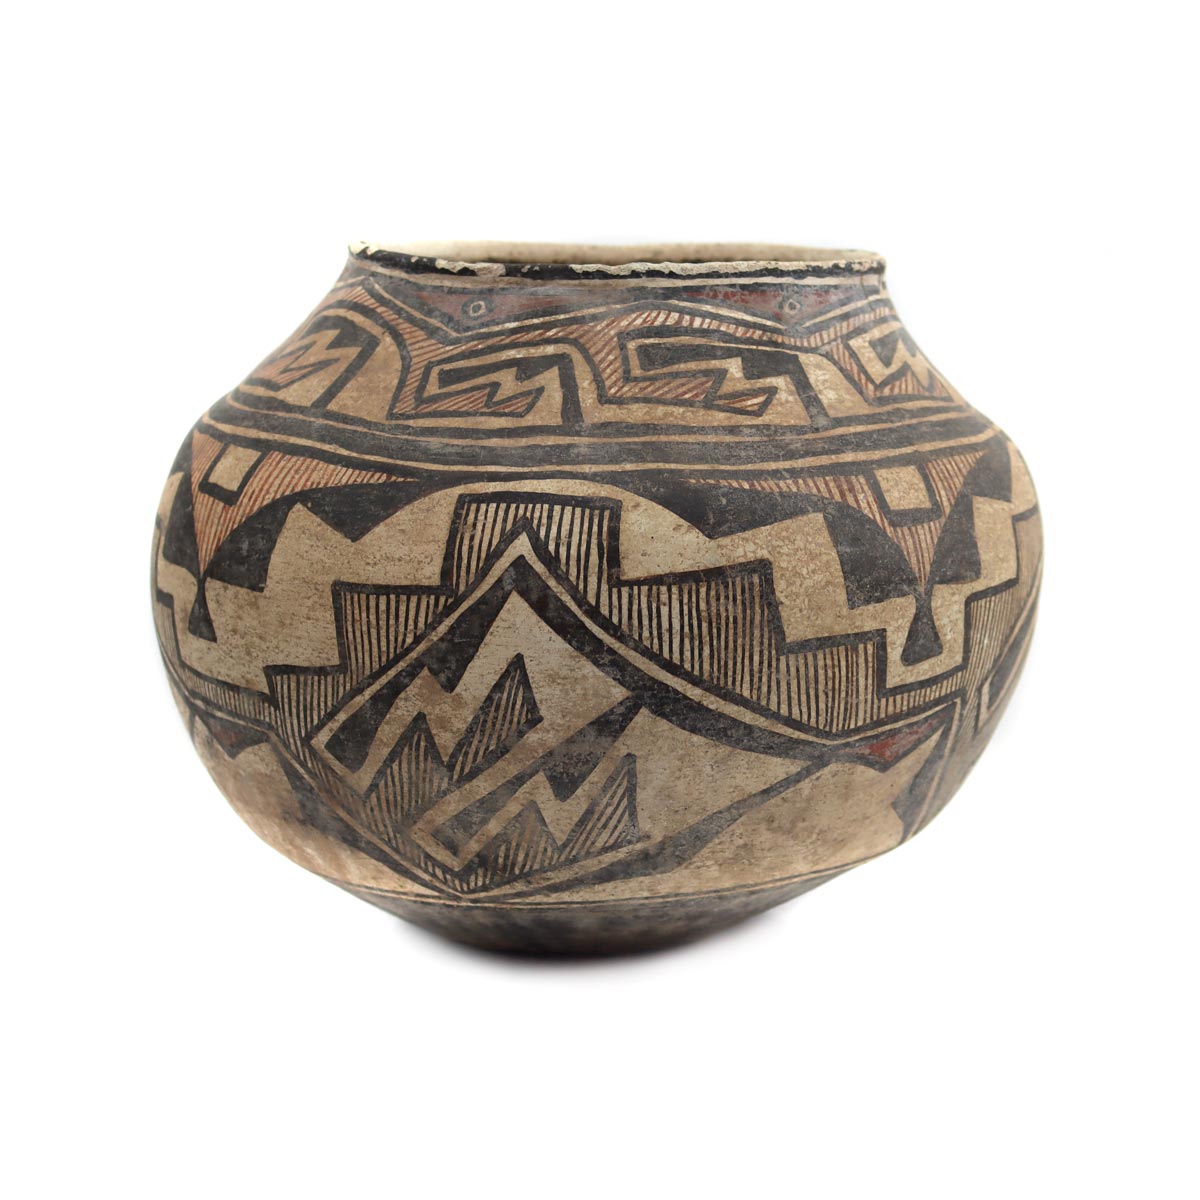 Zuni Polychrome Jar c. 1880-90s, 9.5" x 12.5" (P3644) 2